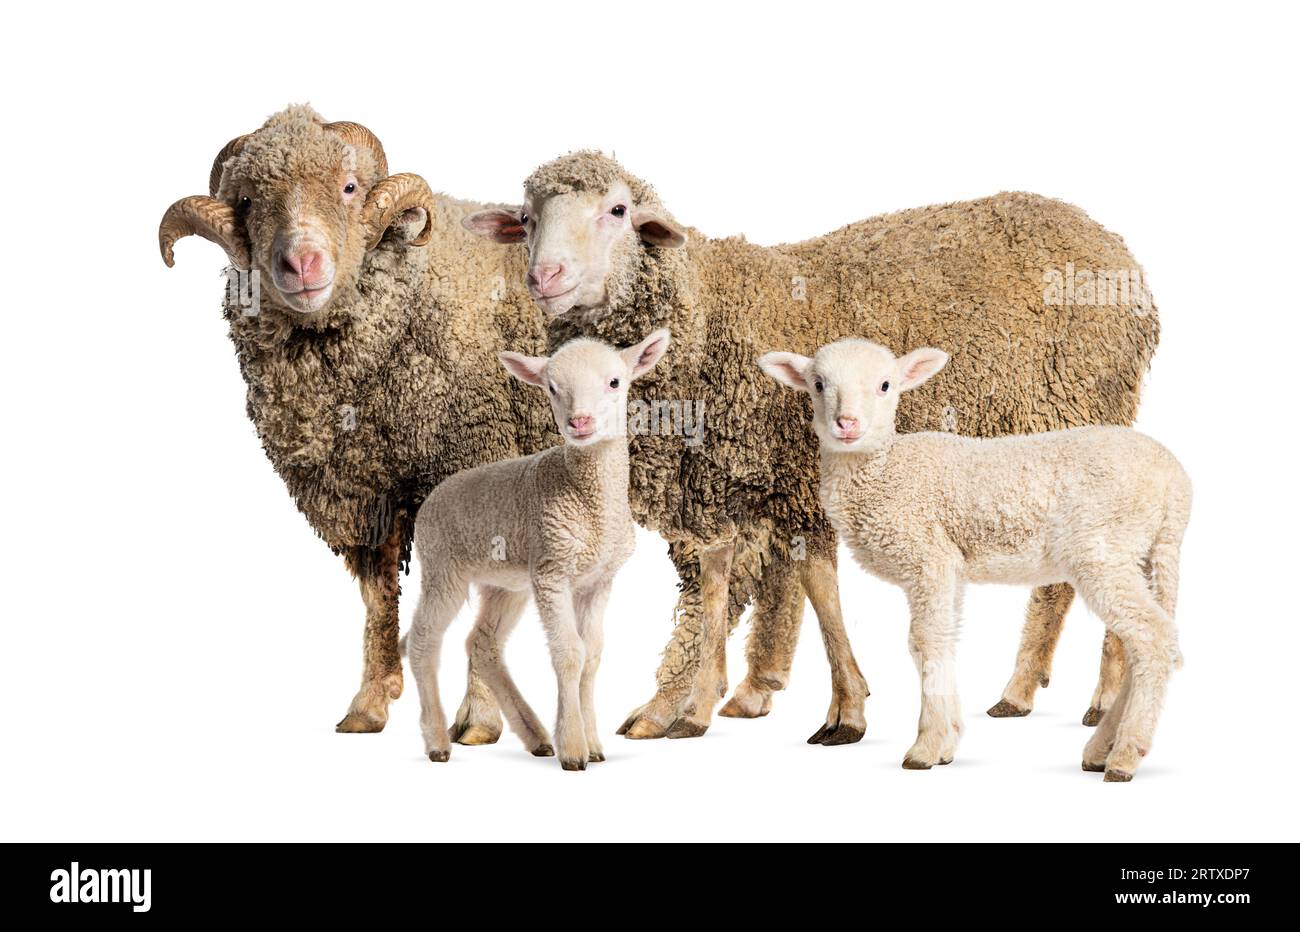 Mouton RAM et Ewe Sopravissana avec ses agneaux, isolé sur blanc Banque D'Images